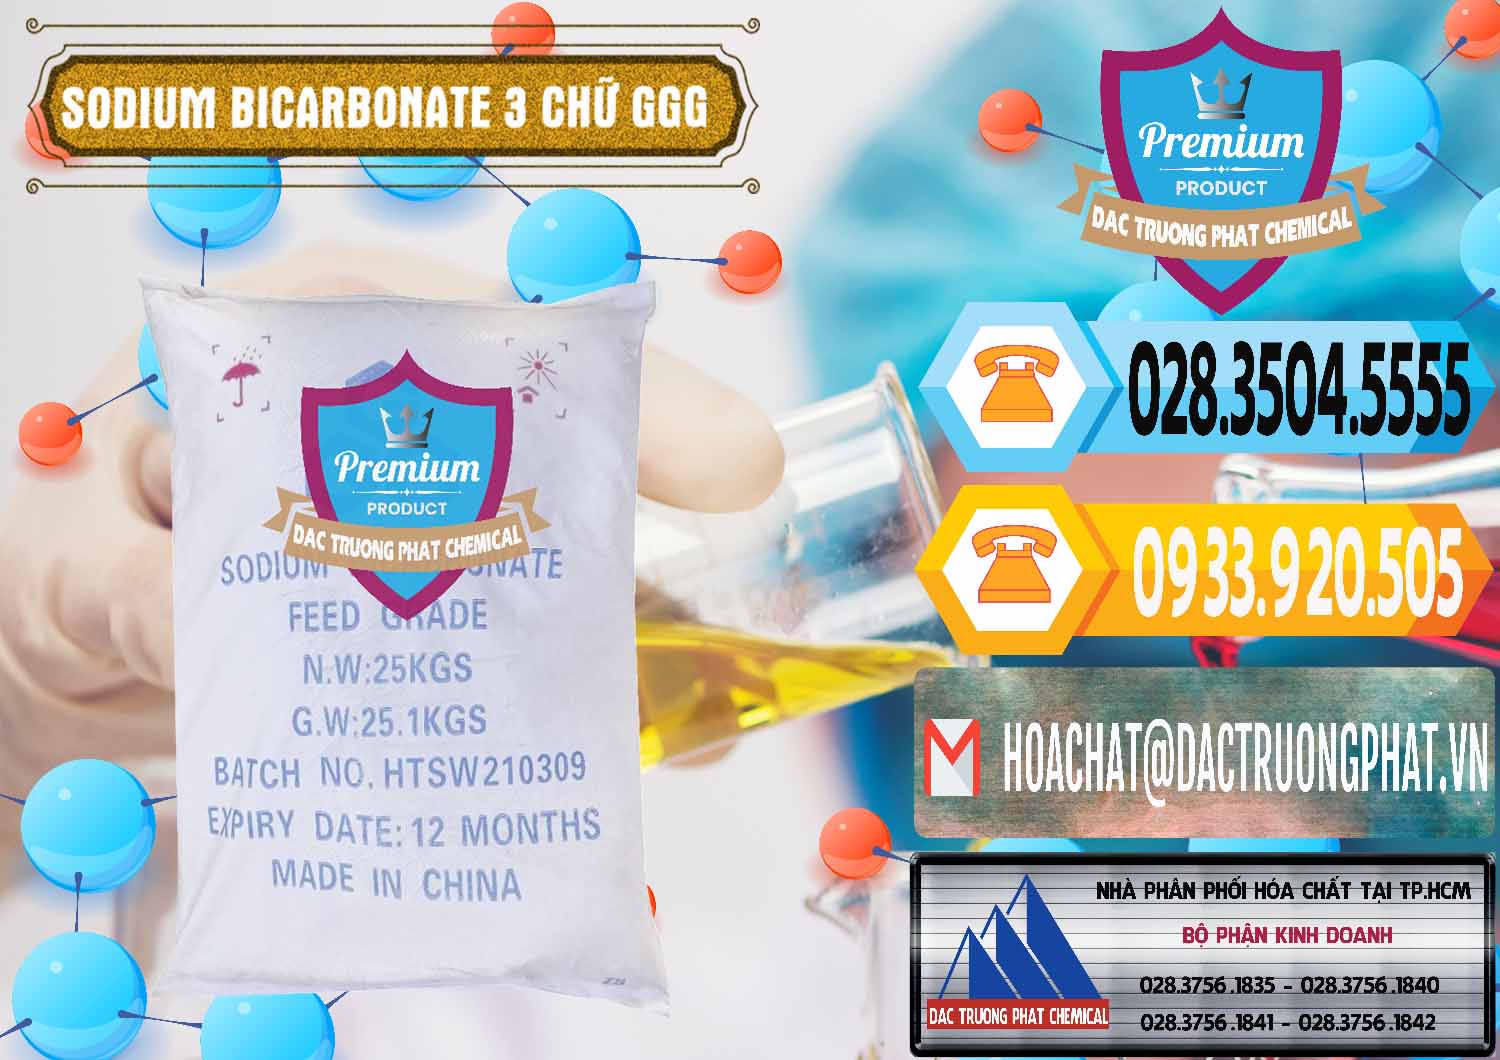 Nơi chuyên bán _ cung ứng Sodium Bicarbonate – Bicar NaHCO3 Food Grade 3 Chữ GGG Trung Quốc China - 0259 - Nhà cung cấp và phân phối hóa chất tại TP.HCM - hoachattayrua.net